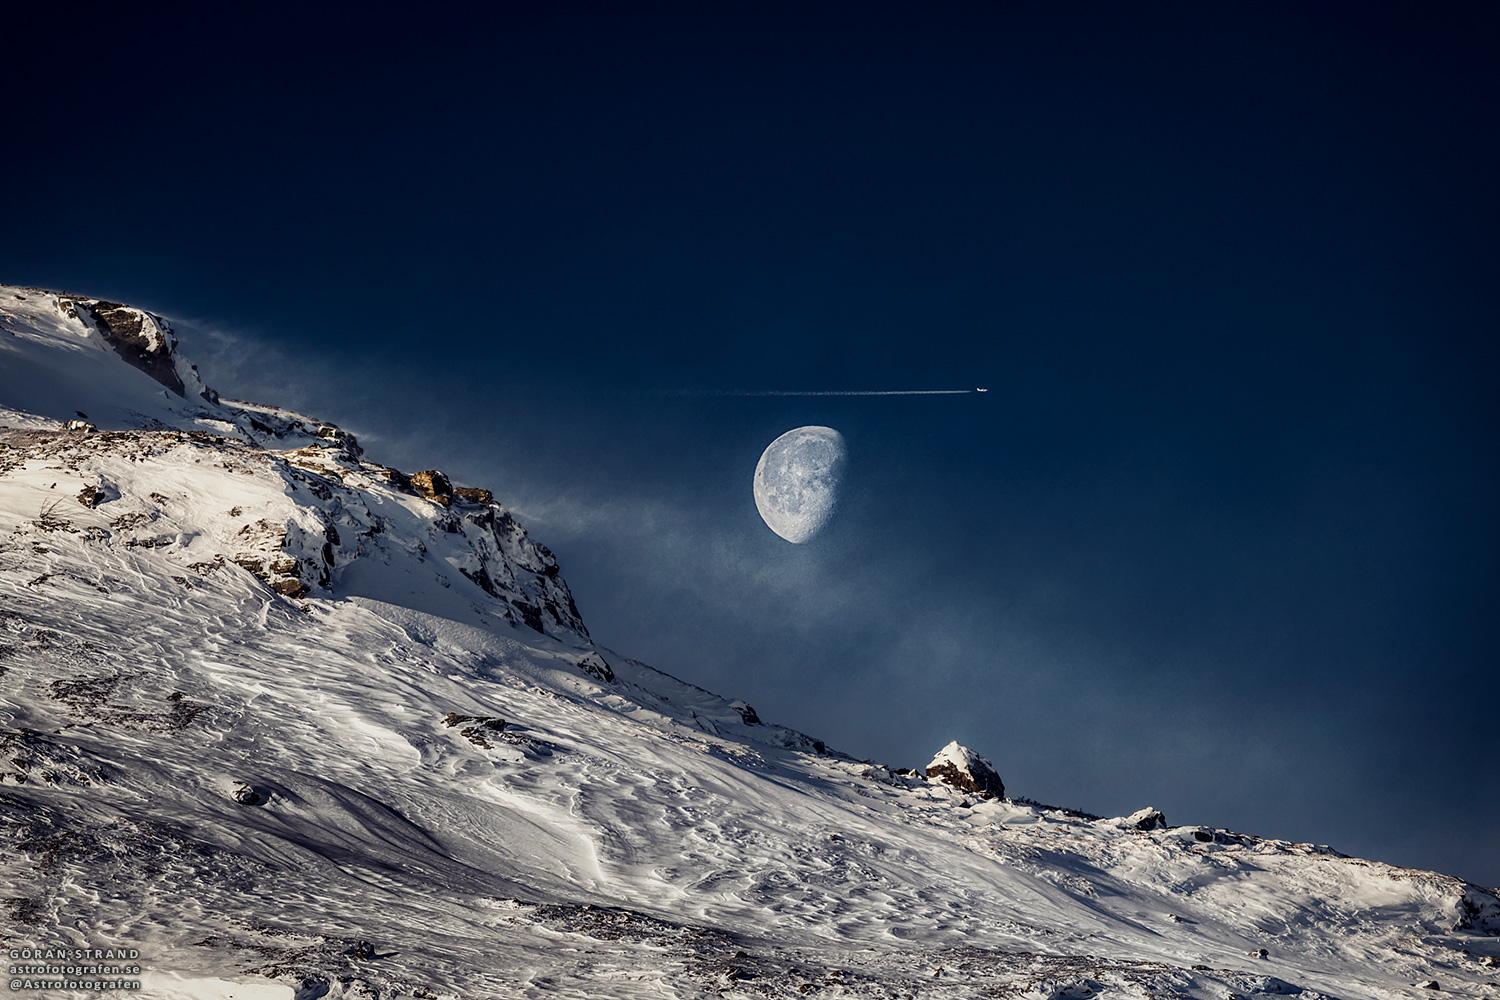 قمرٌ بدرٌ تقريباً يُرى فوق تلّةٍ مُنحدرة مكسوّة بالثلوج. تُرى طائرة ومسار تكاثف قُرب القمر مُباشرة.